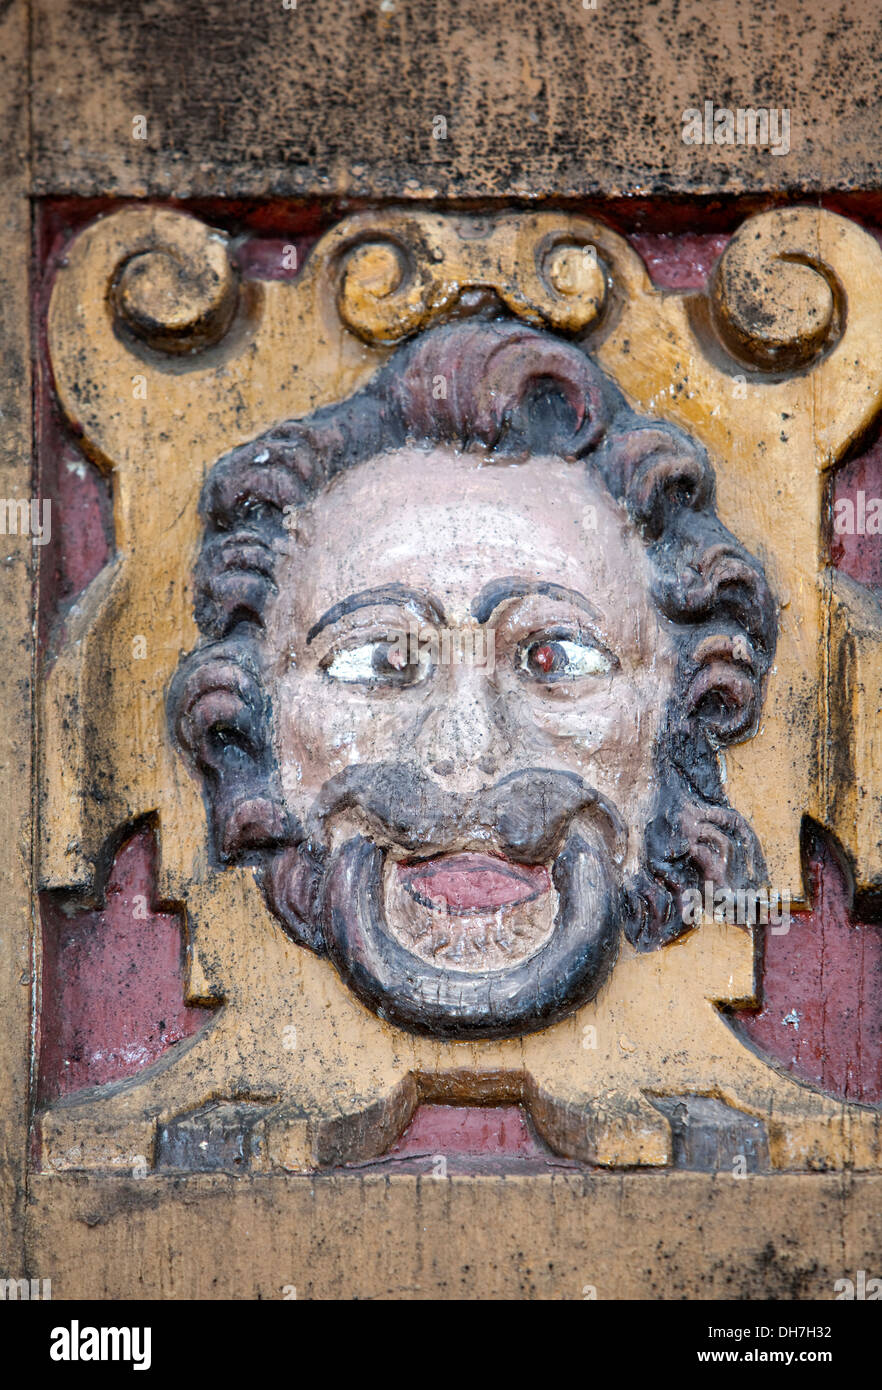 Figure scolpite, vecchia scuola latina decorata con sculture in legno del XVII secolo, Alfeld, Leine, Bassa Sassonia, Germania, Europa Foto Stock